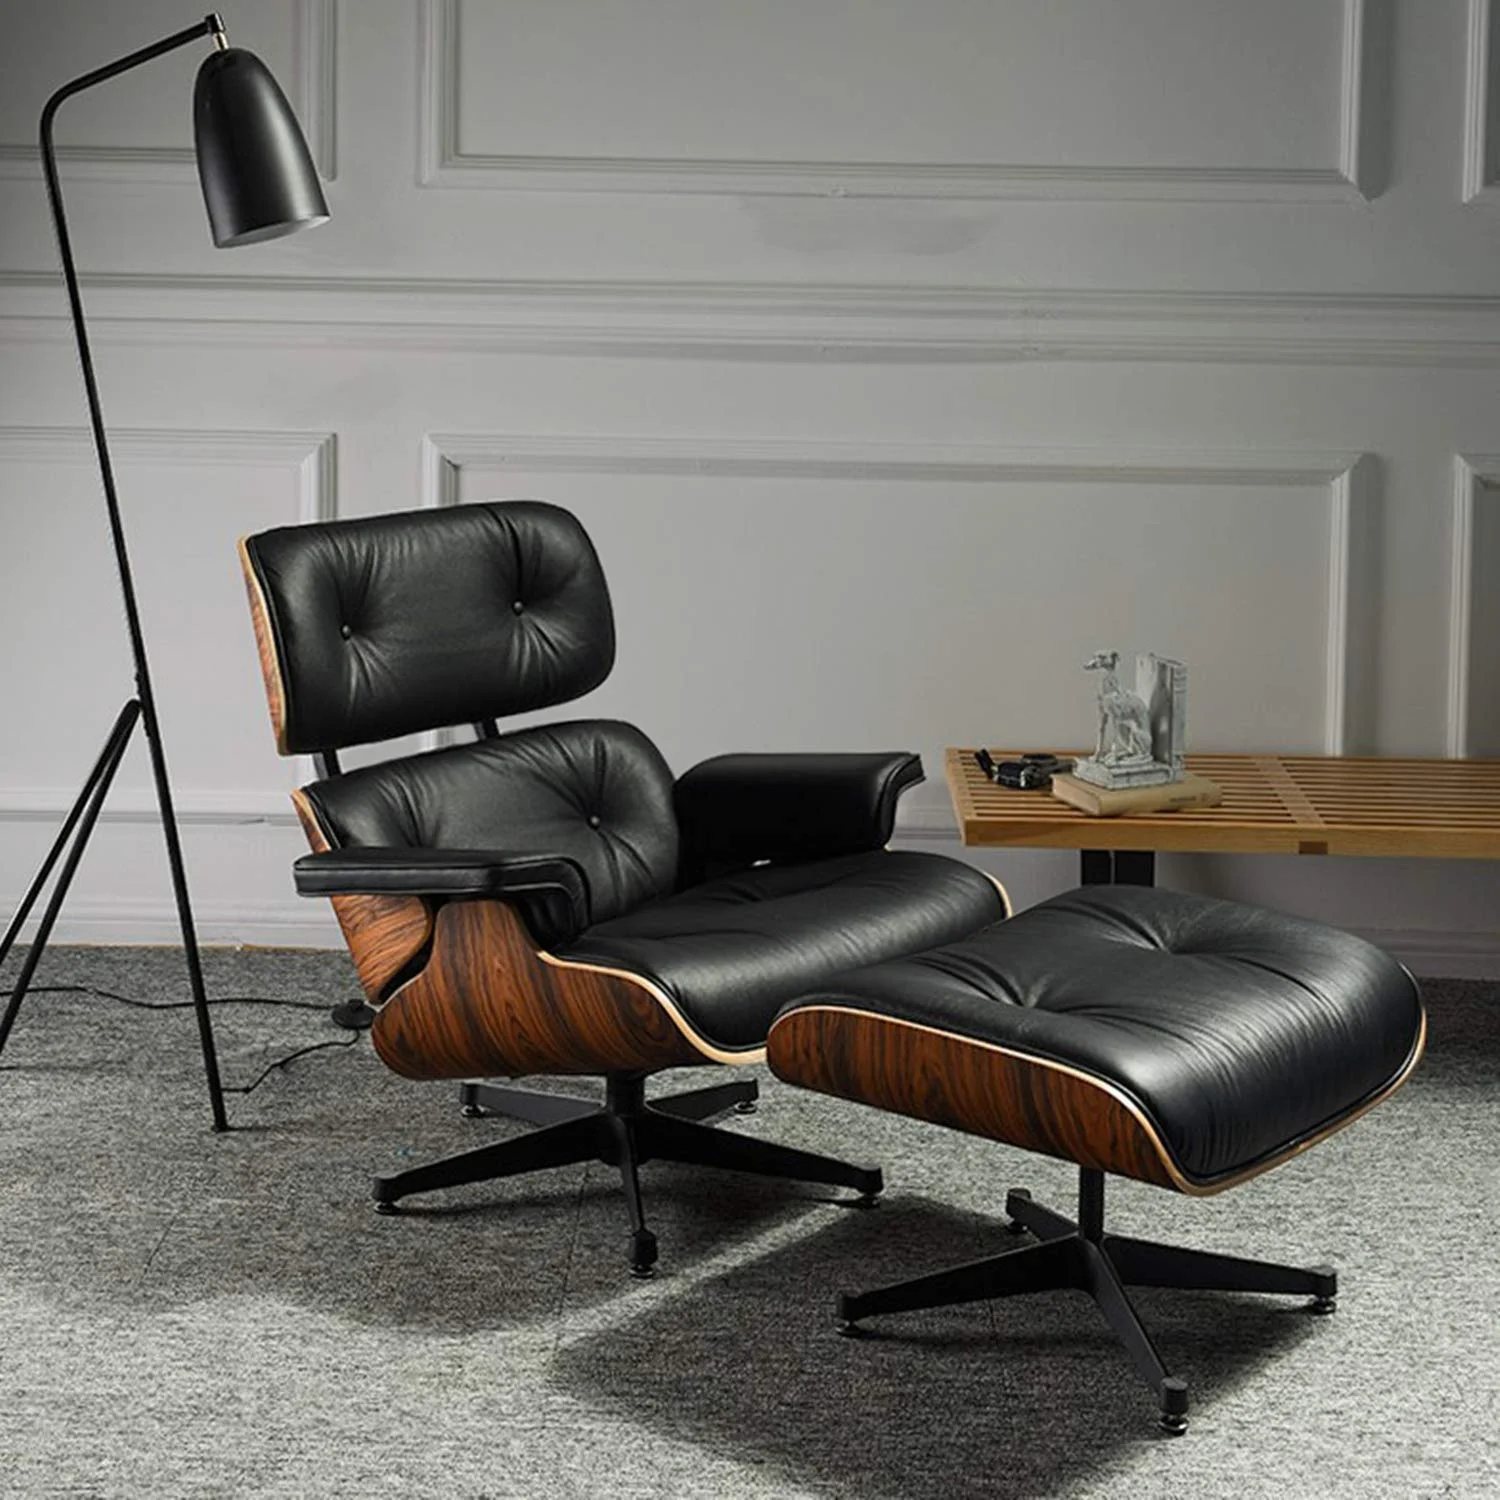 Furgle современное классическое кресло для отдыха шезлонг мебель Реплика кресло для отдыха натуральное кожаное вращающееся кресло для отдыха для гостиничного отеля|Шезлонг|   | АлиЭкспресс